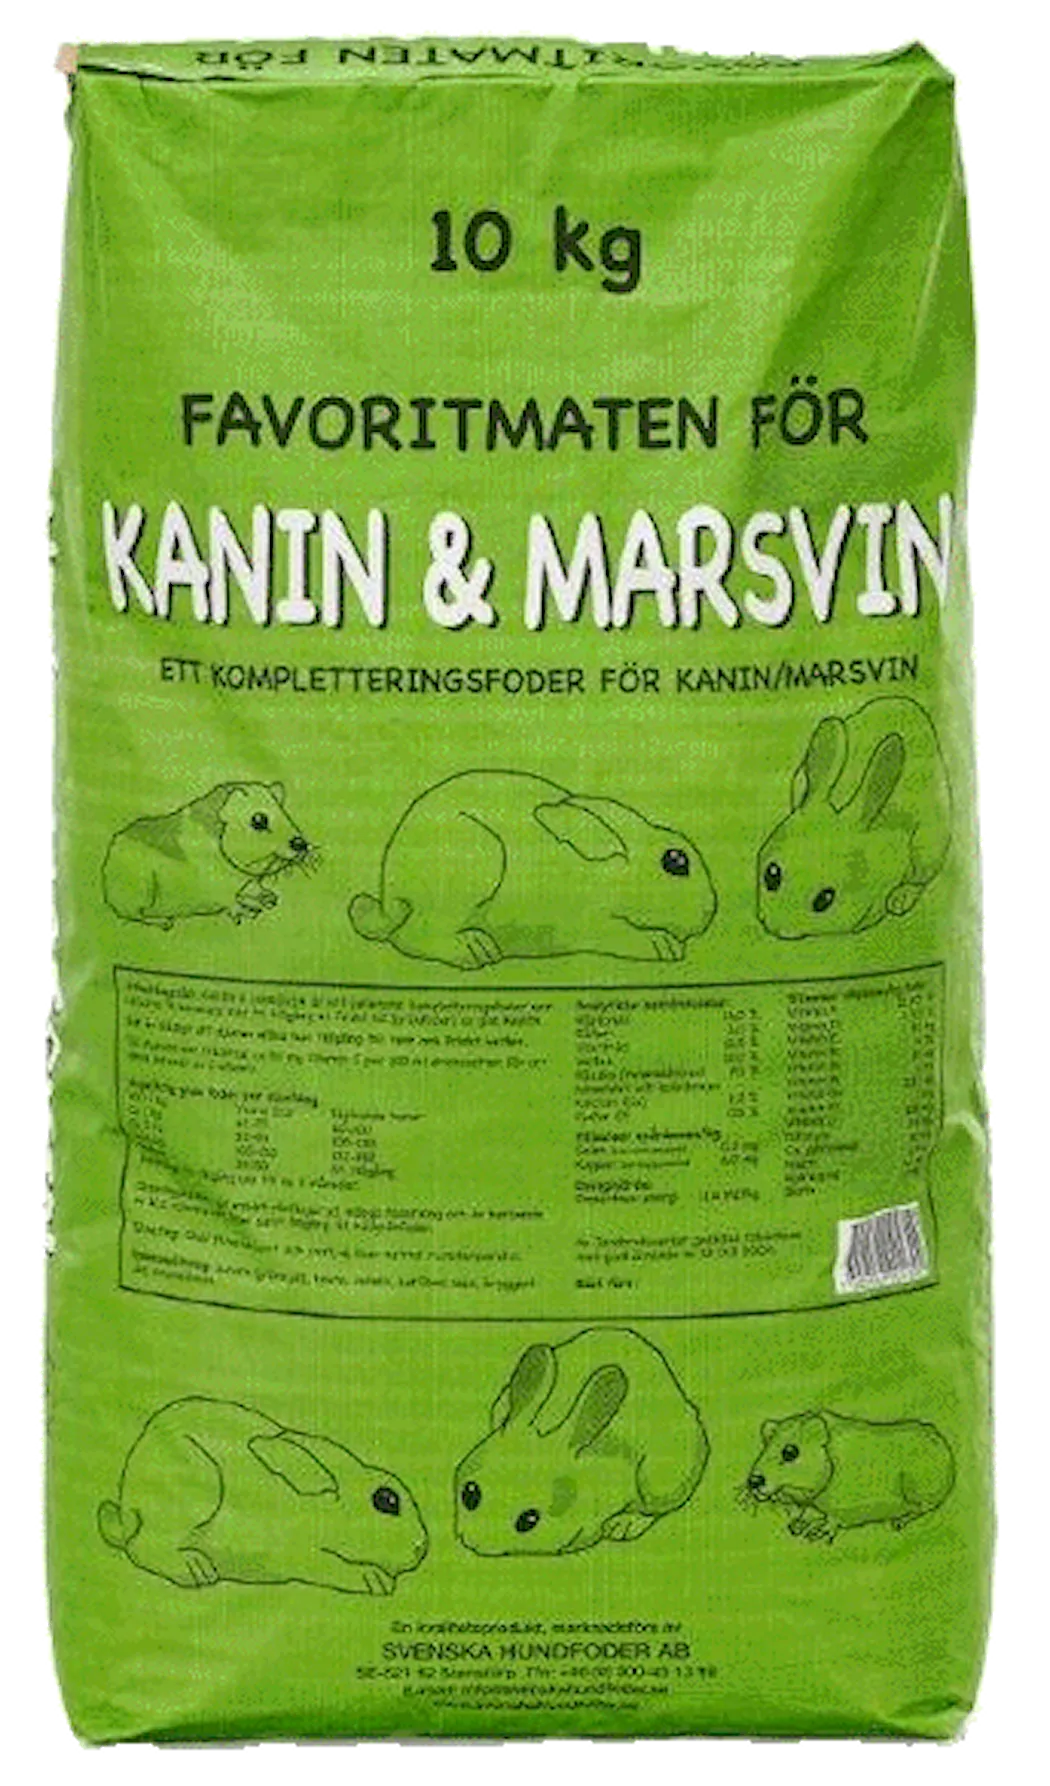 Kanin & Marsvinsfoder